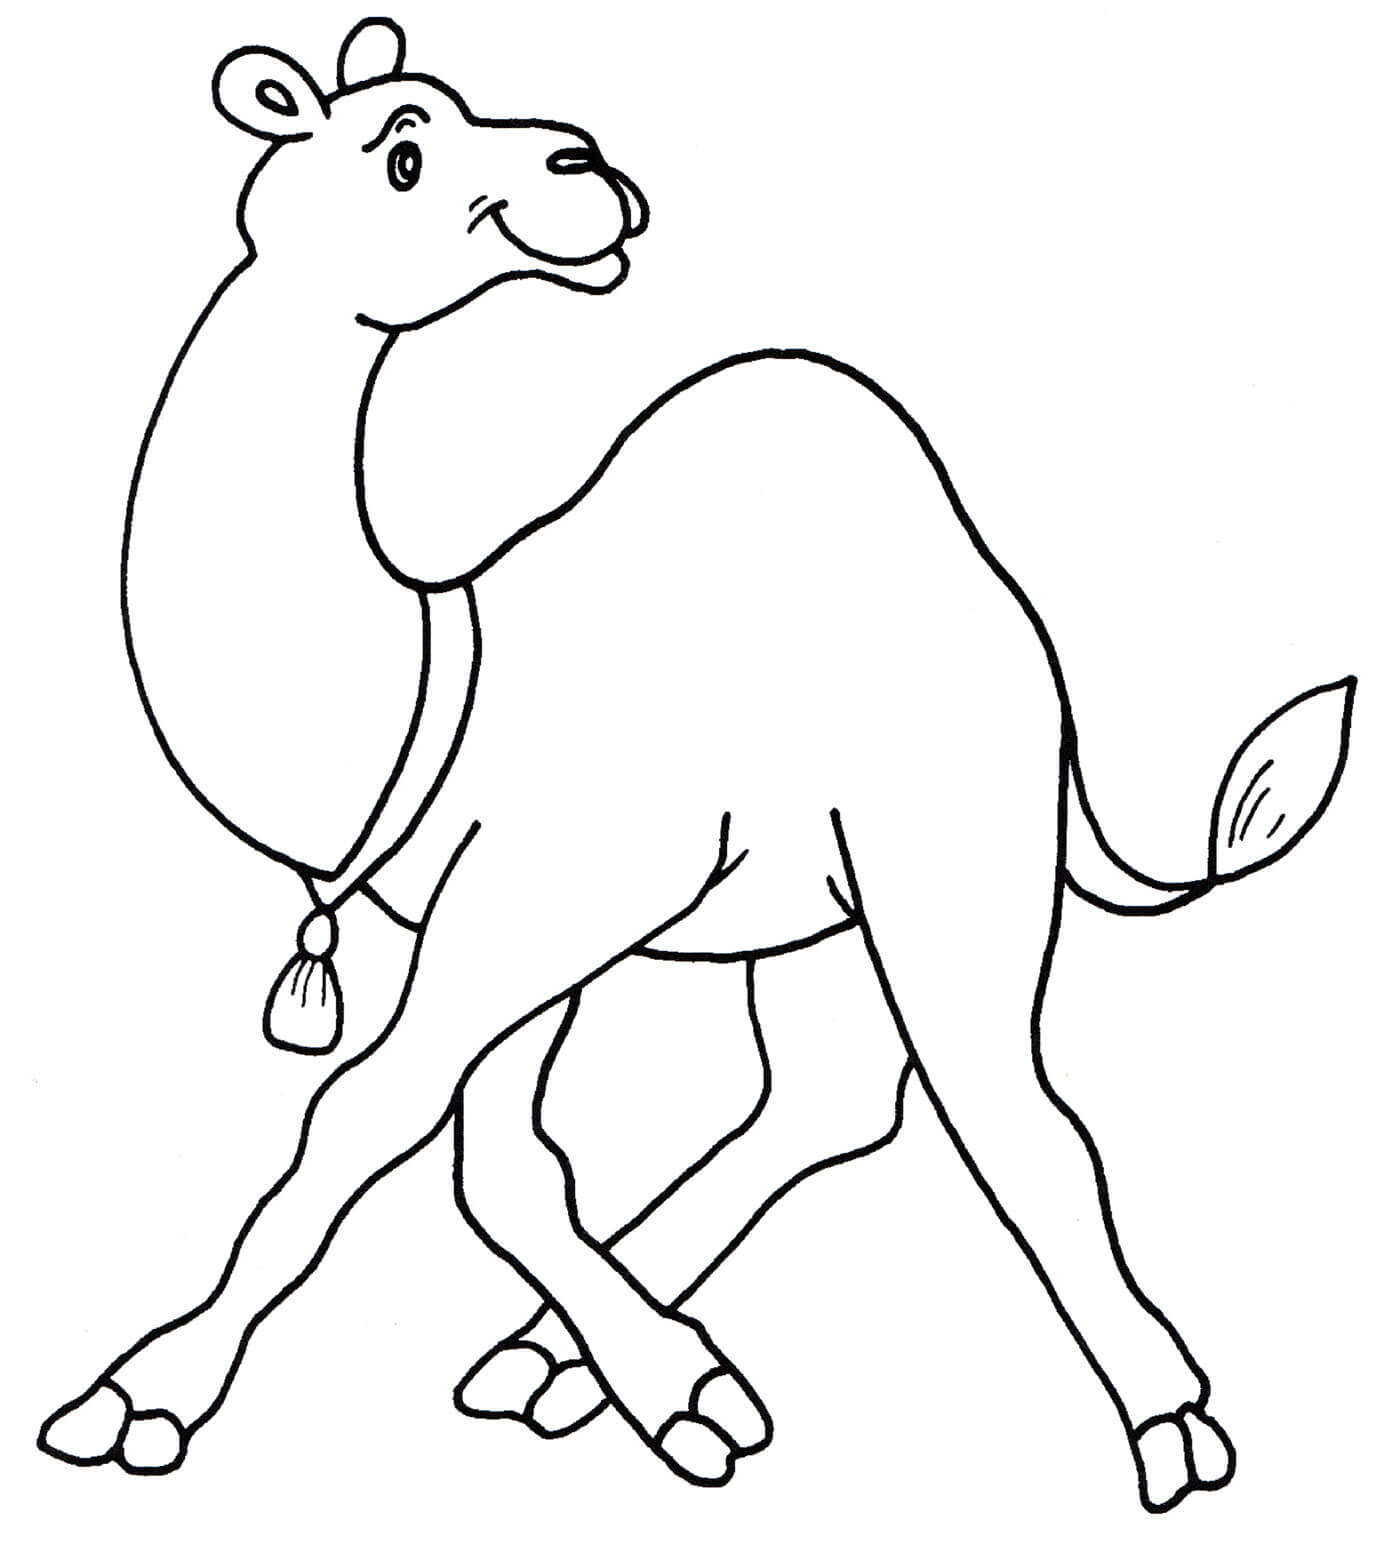 Раскраска Верблюд с горбом